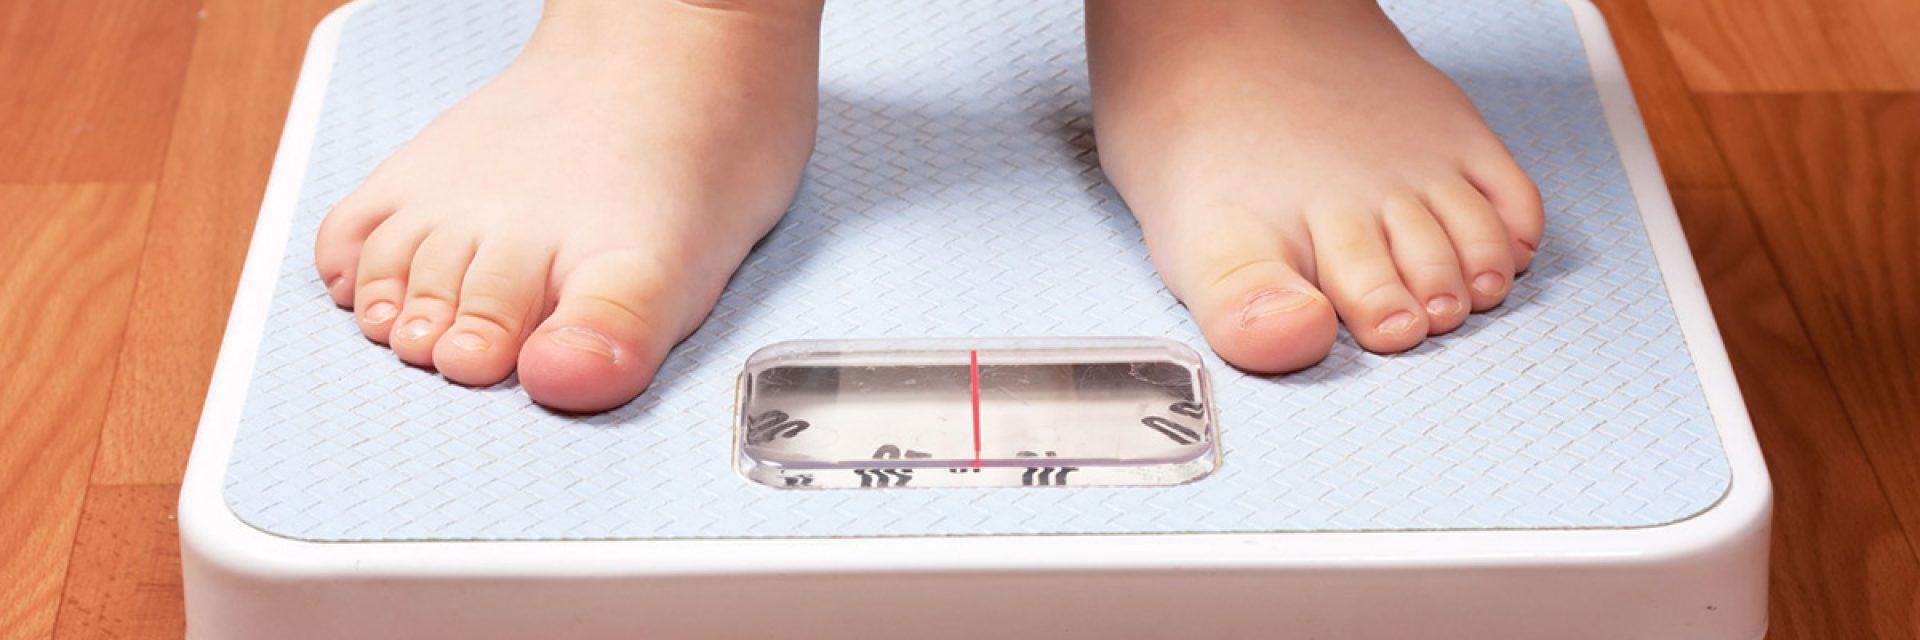 Childhood Obesity, Diabetes or Heart Disease